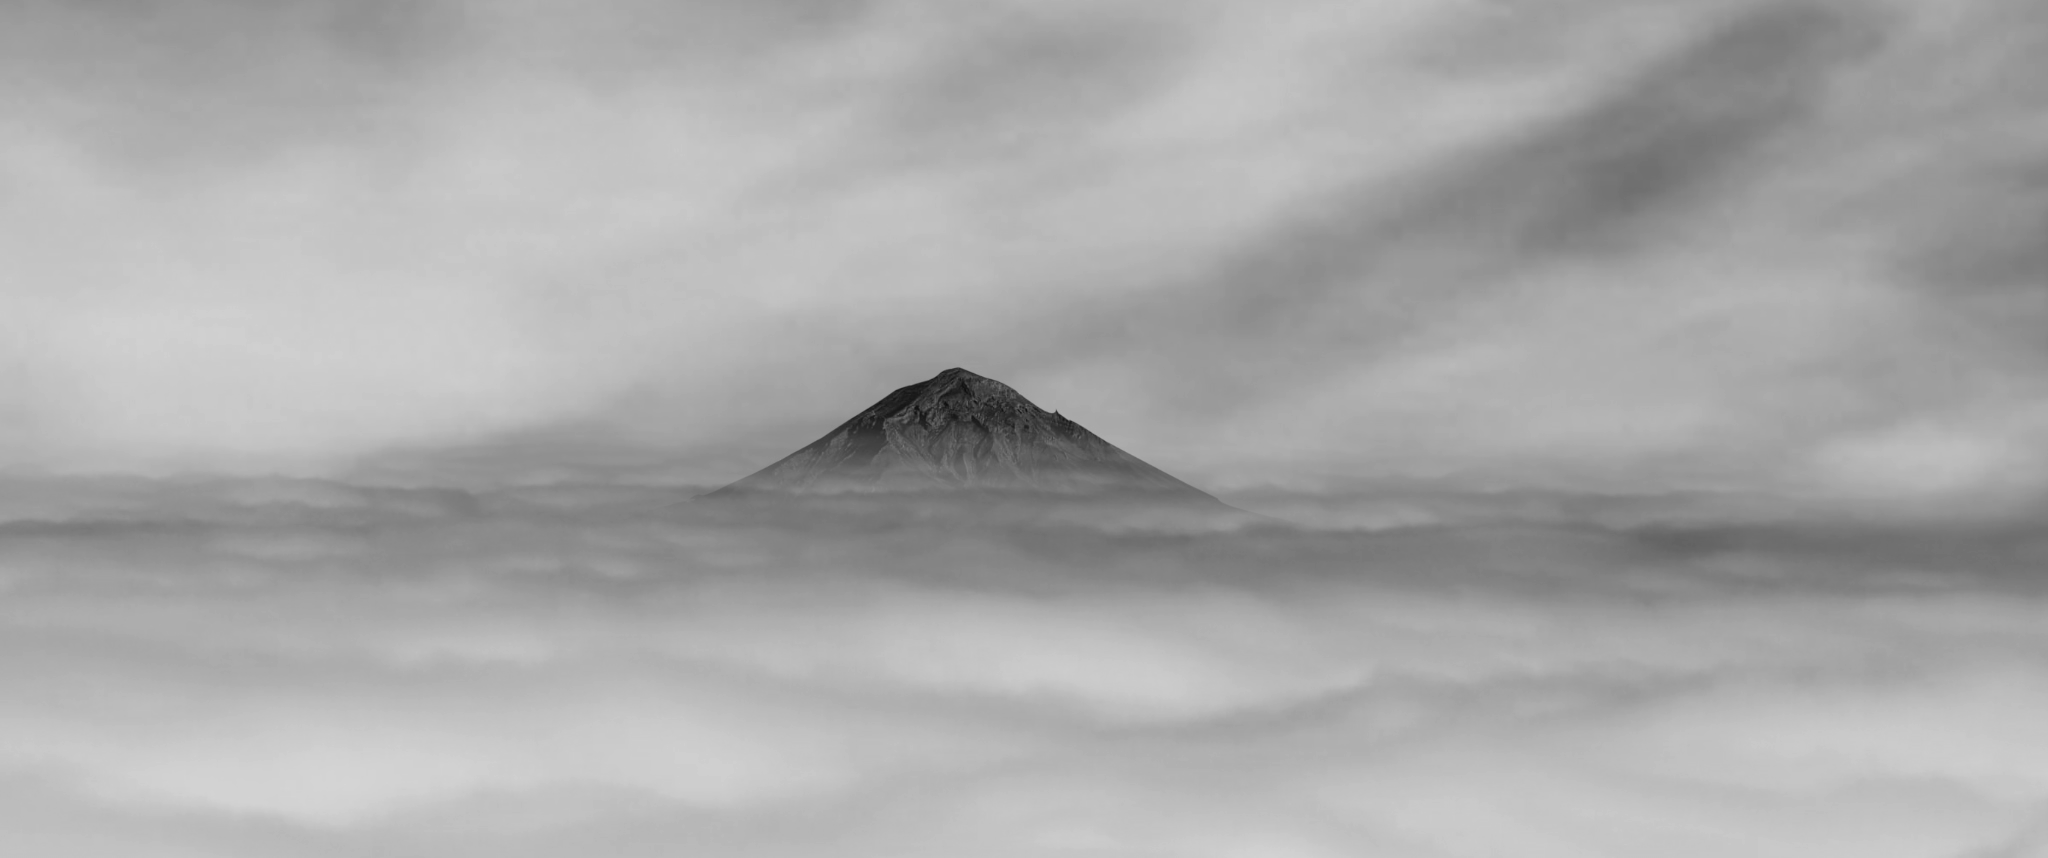 Las Nubes bajo el Volcán (Clouds Under the Mountain), Dir. Adán Ruiz.